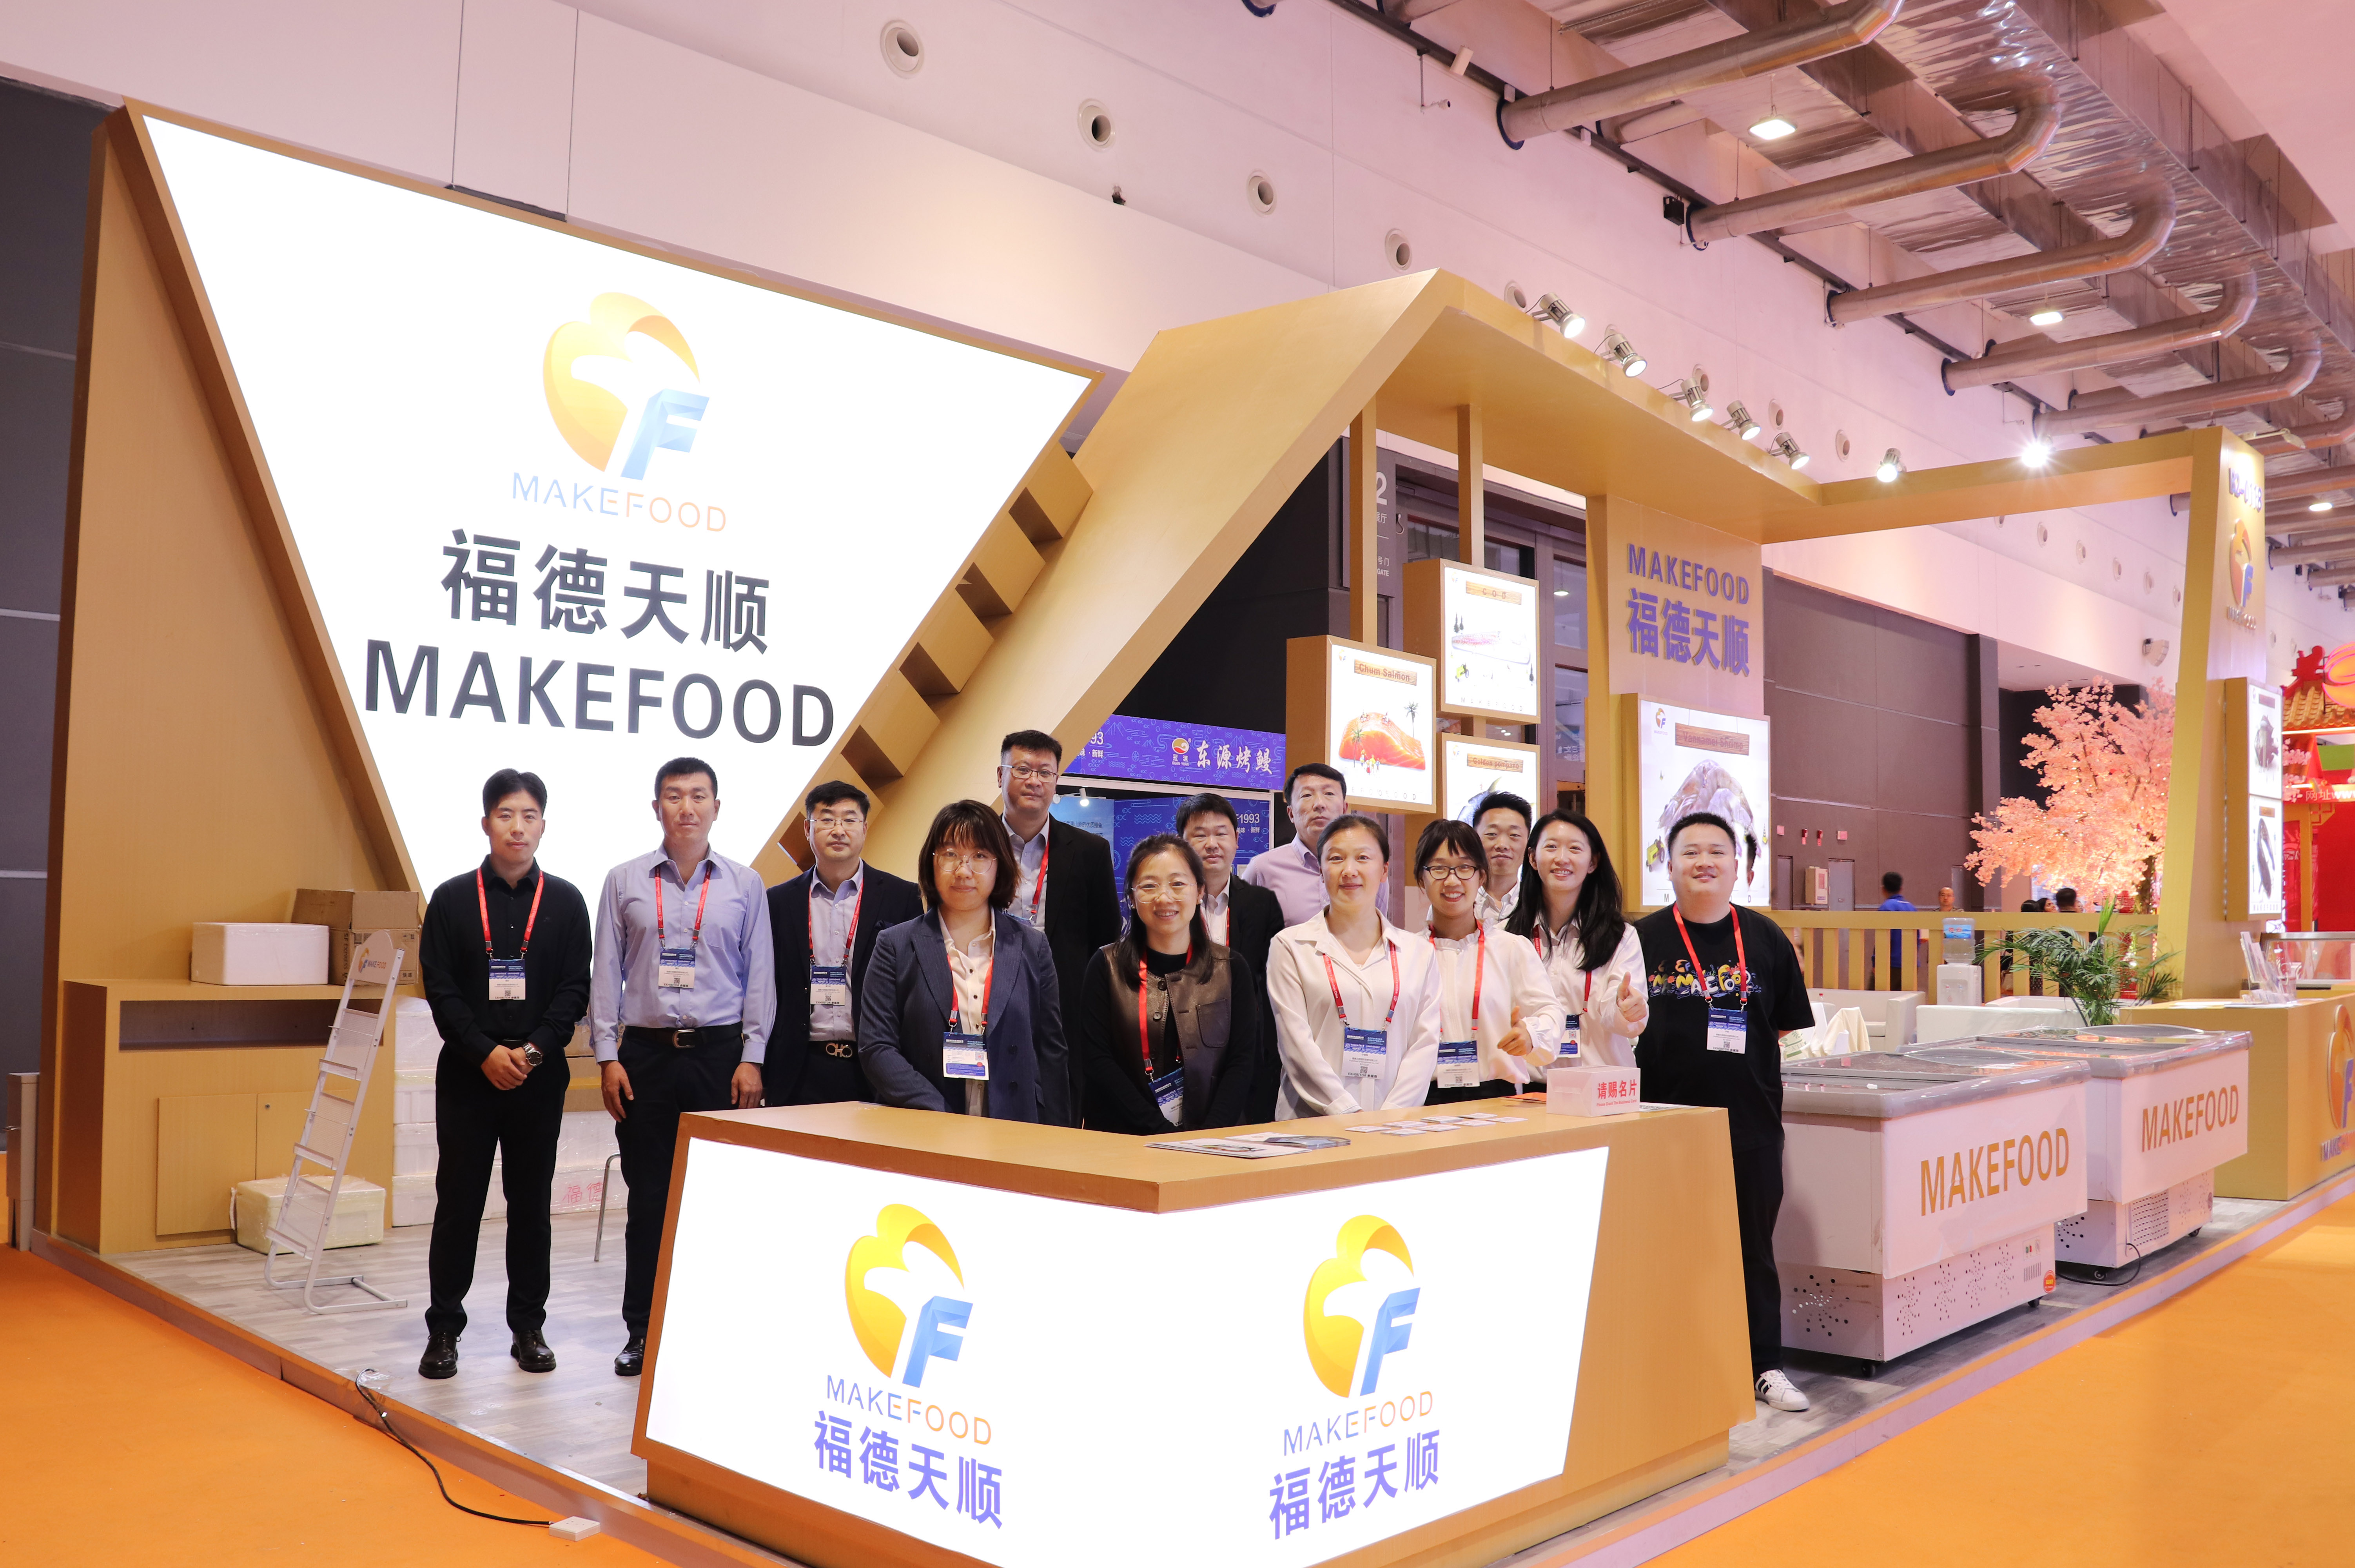 MAKEFOOD hatte einen wunderbaren Auftritt auf der Qingdao Maritime Expo, um über Brancheninnovationen und nachhaltige Entwicklung zu diskutieren